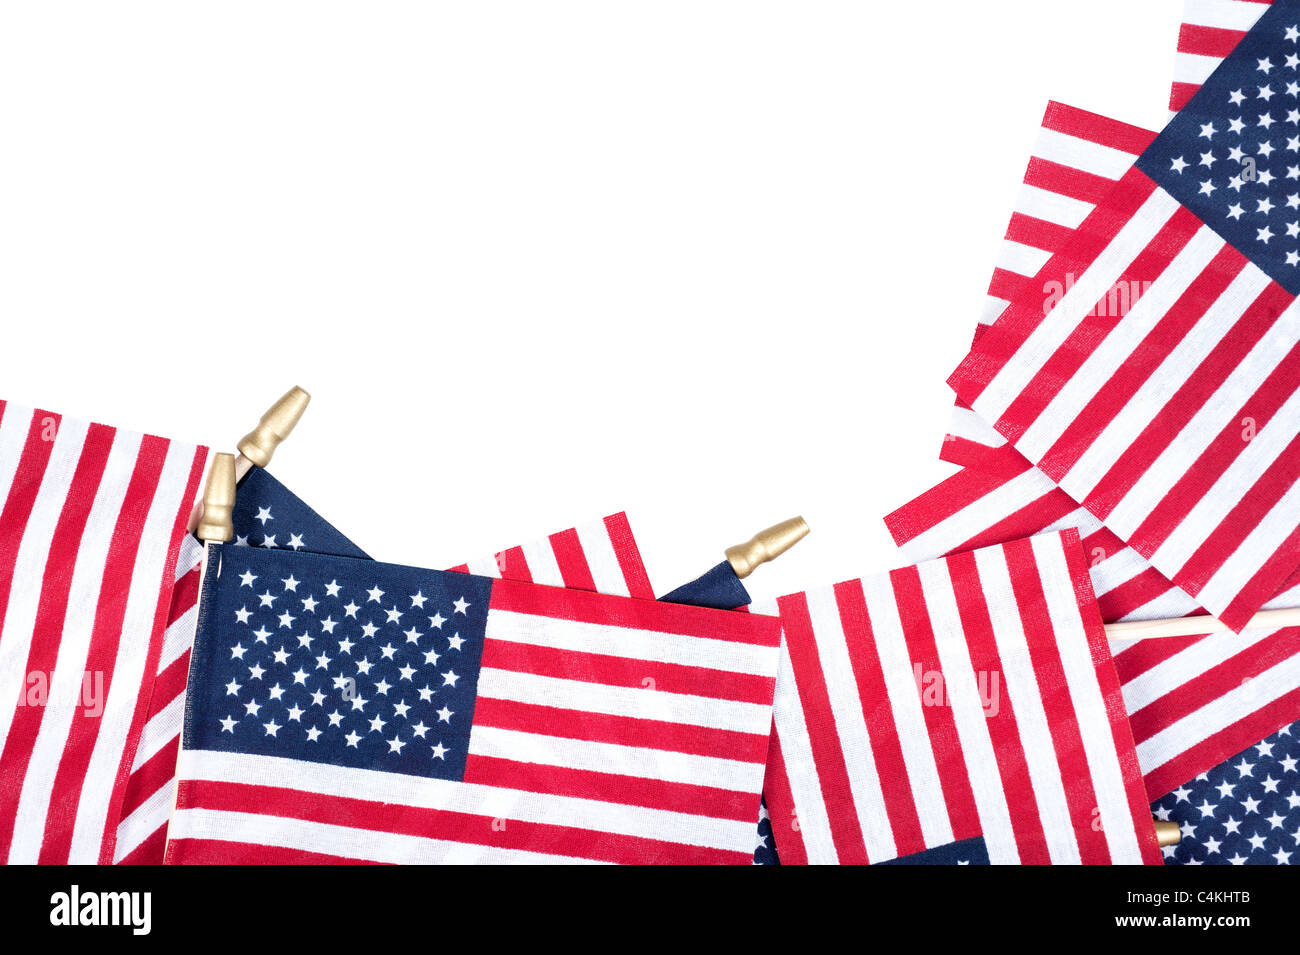 Amerikanische Flaggen Grenzen einen reinen weißen Hintergrund. Raum für Kopie offen gelassen. Stockfoto